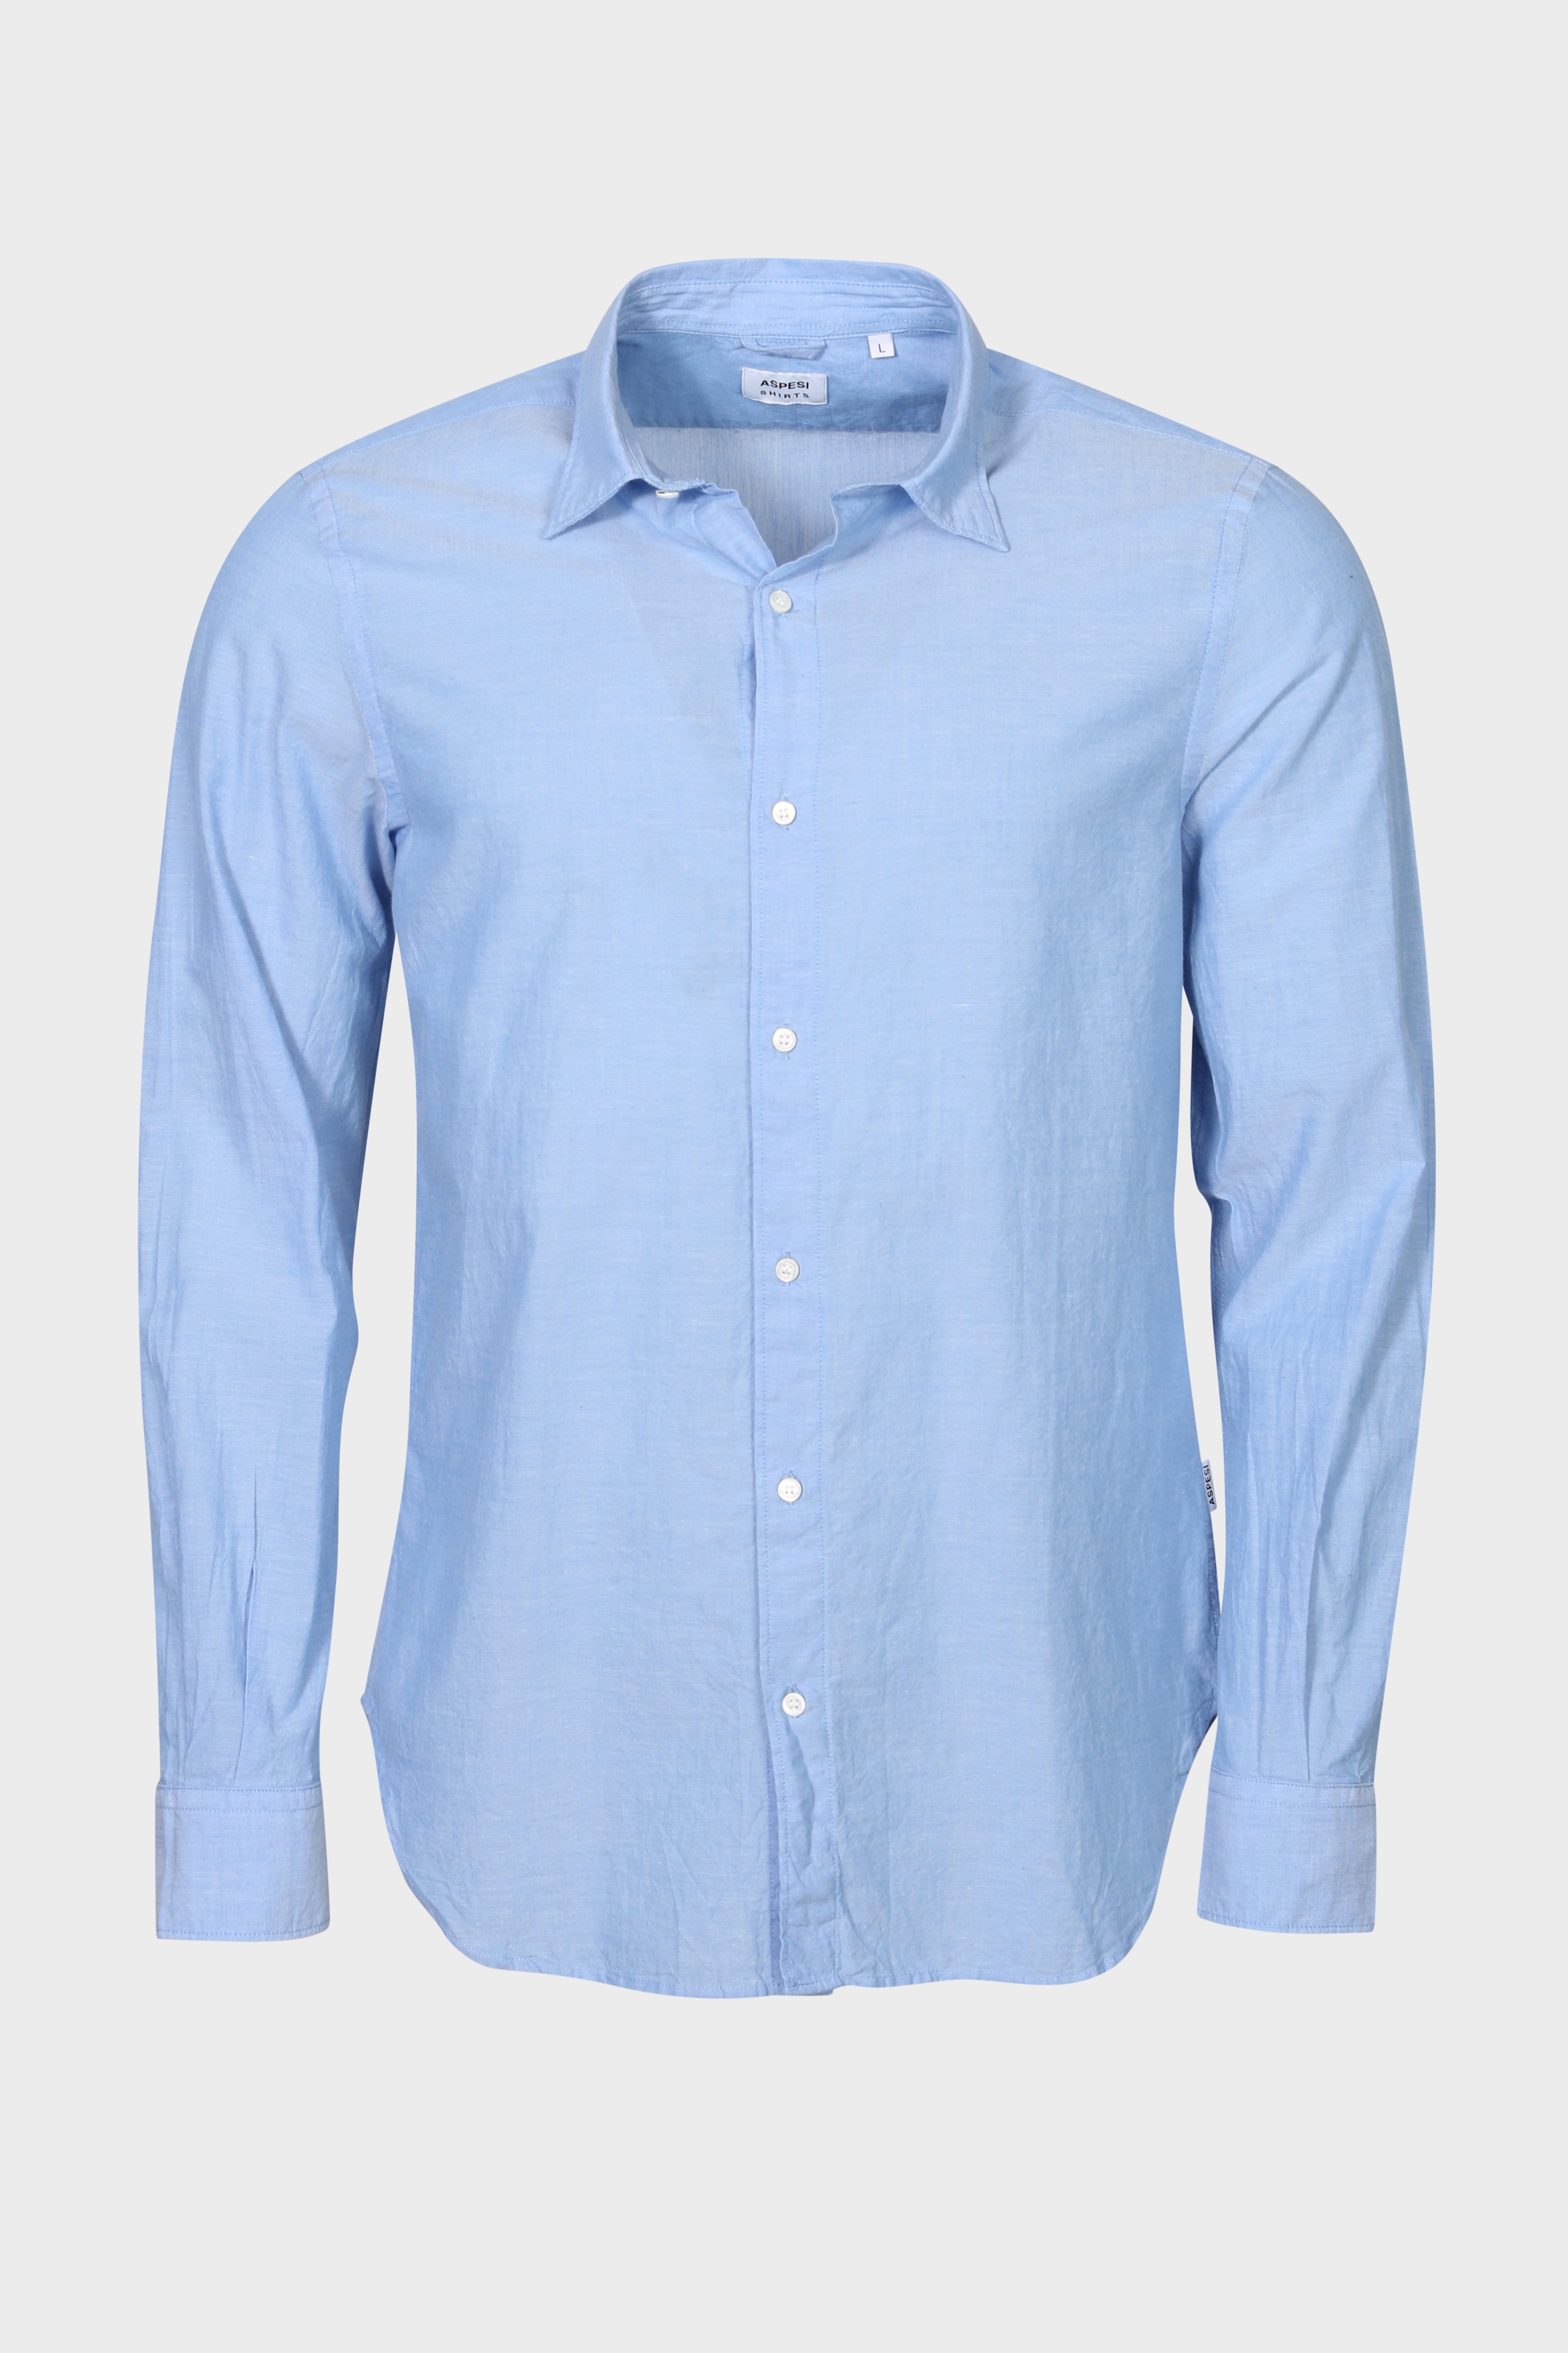 ASPESI Light Shirt in Light Blue XL